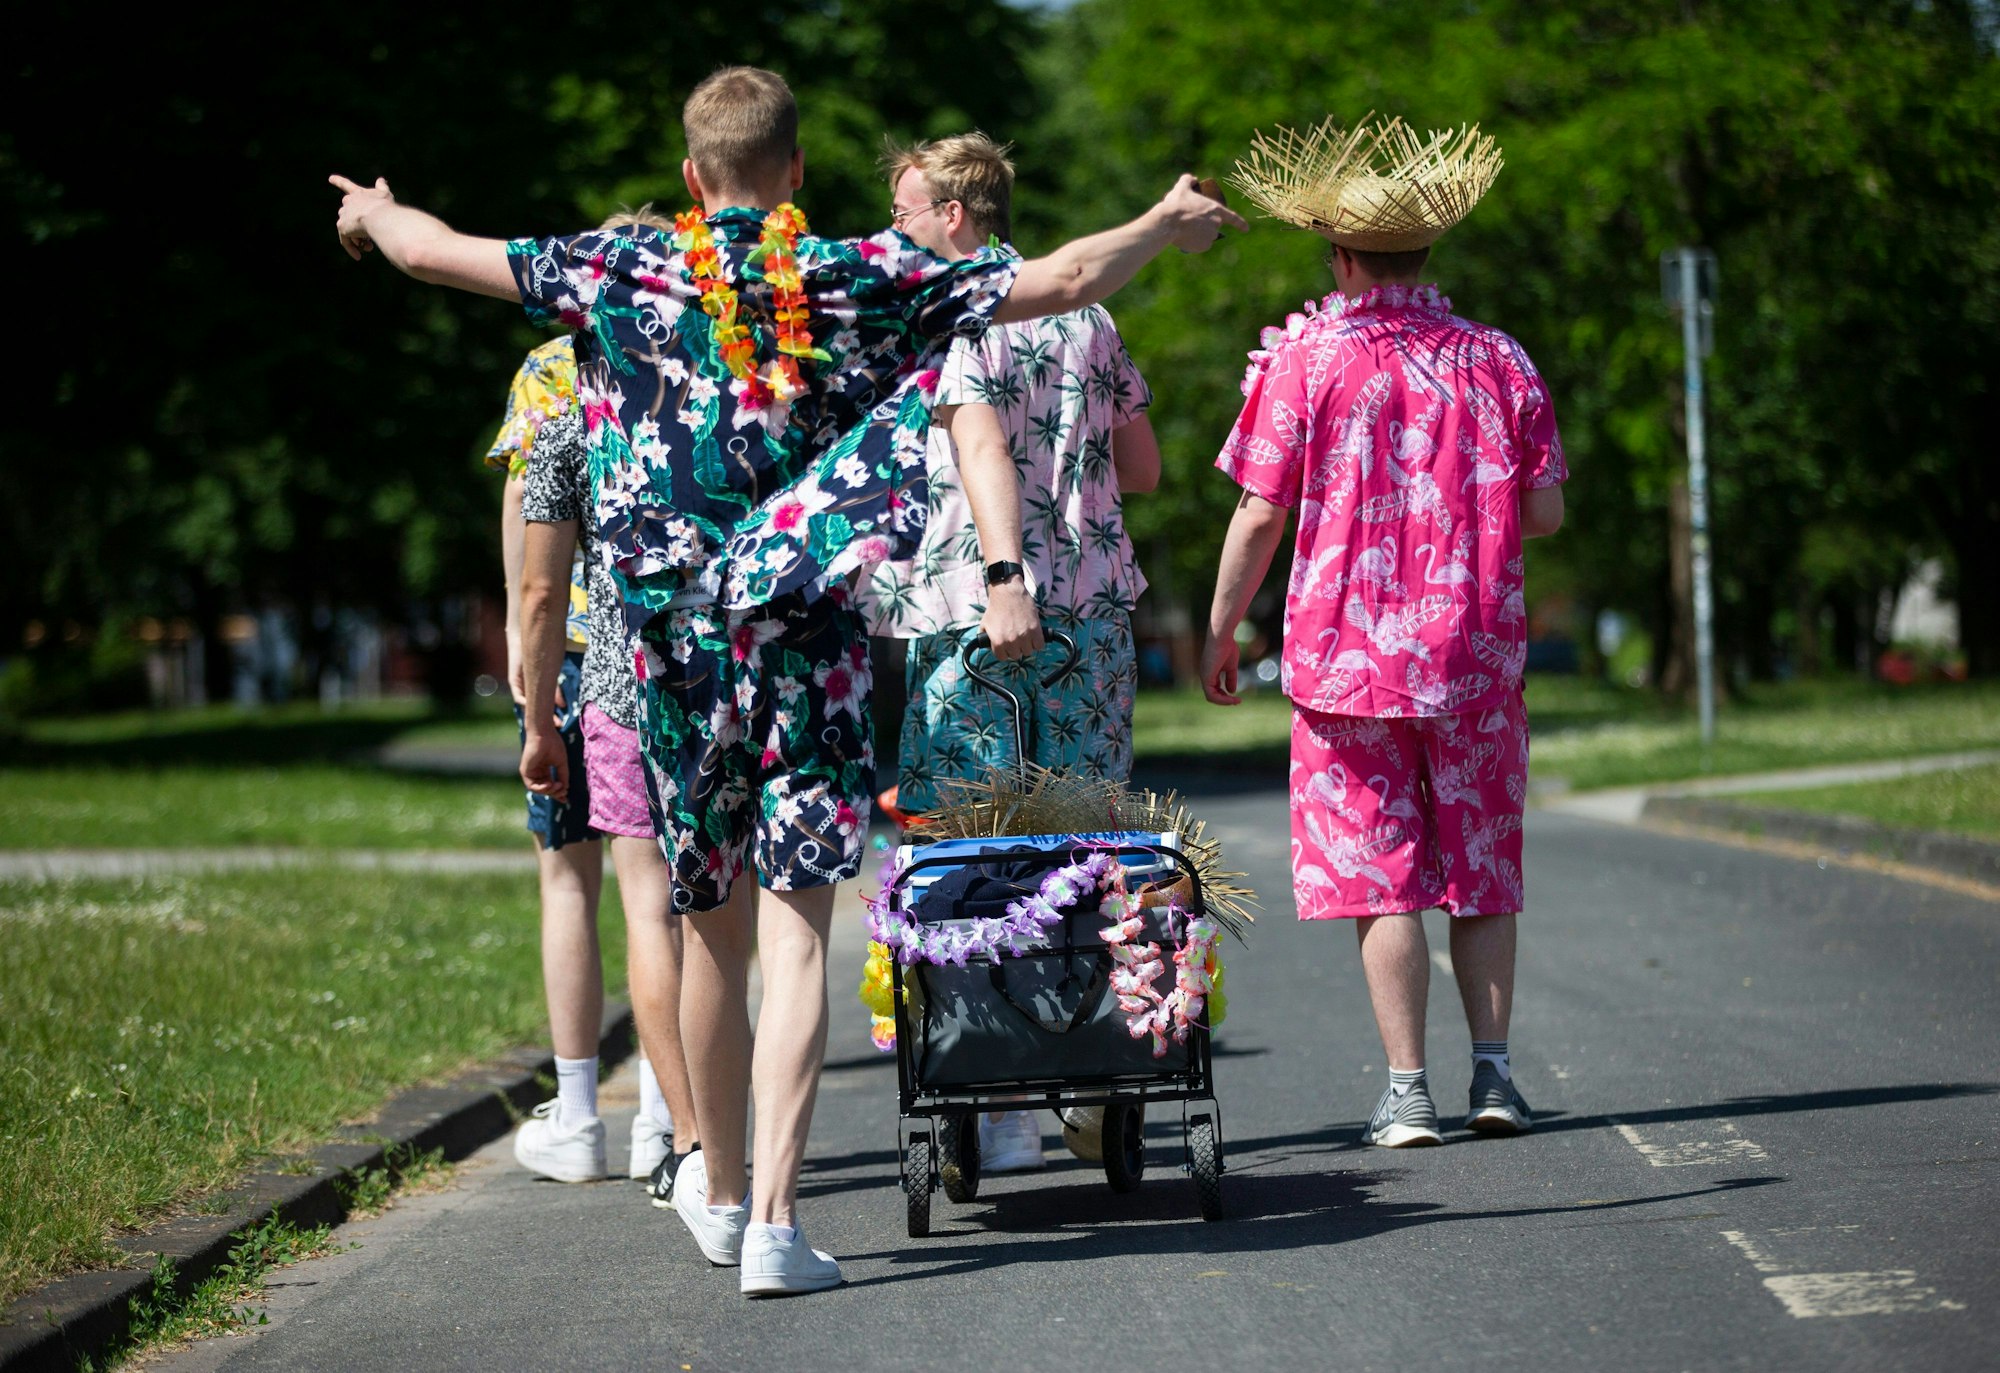 Junge Männer in Outfits mit floralen Mustern gekleidet, ziehen einen geschmückten Bollerwagen mit Getränken am Aachener Weiher hinter sich her.